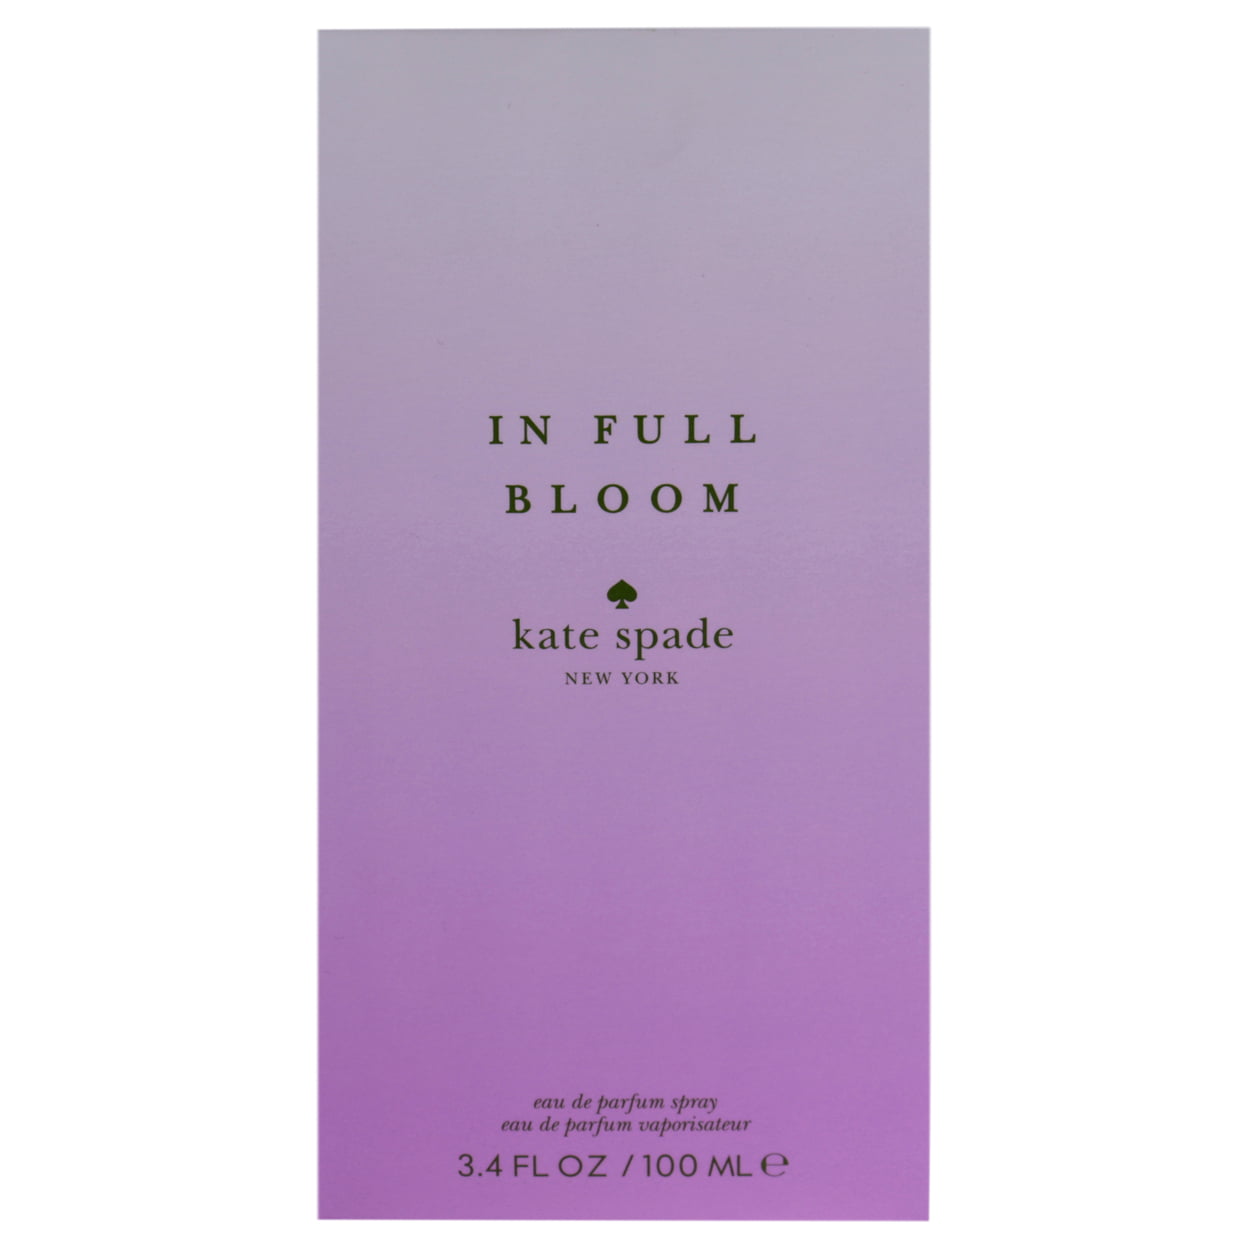 2018 in Full Bloom by Kate Spade for Women - Eau de Parfum Spray  oz -  